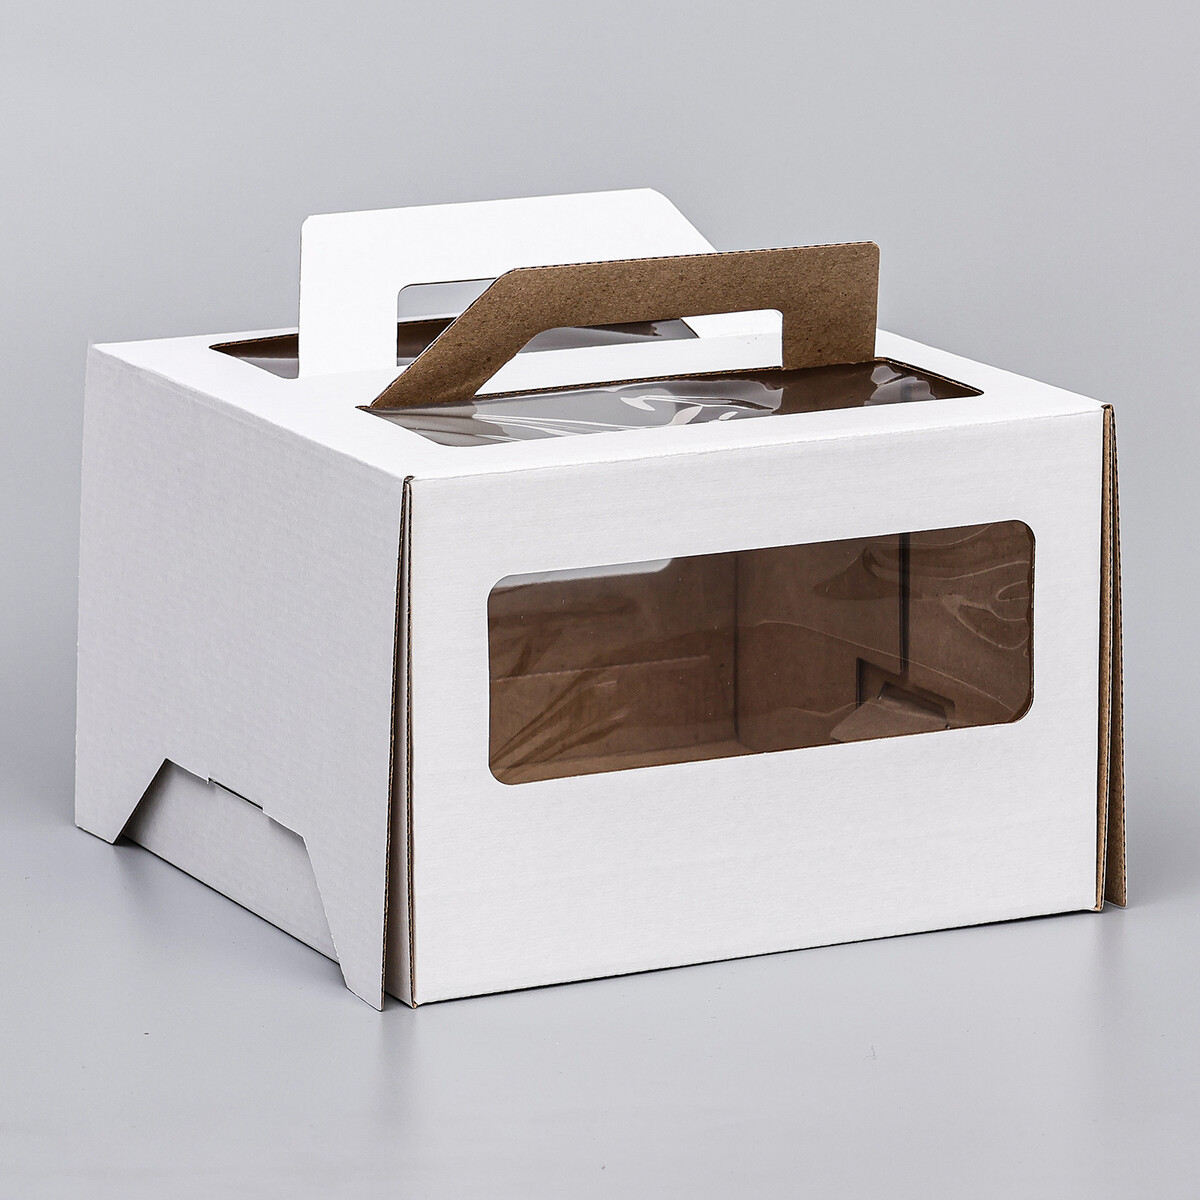 Коробка под торт 2 окна, с ручками, белая, 22 х 22 х 15 см коробка для десерта белая 10 х 10 х 6 5 см